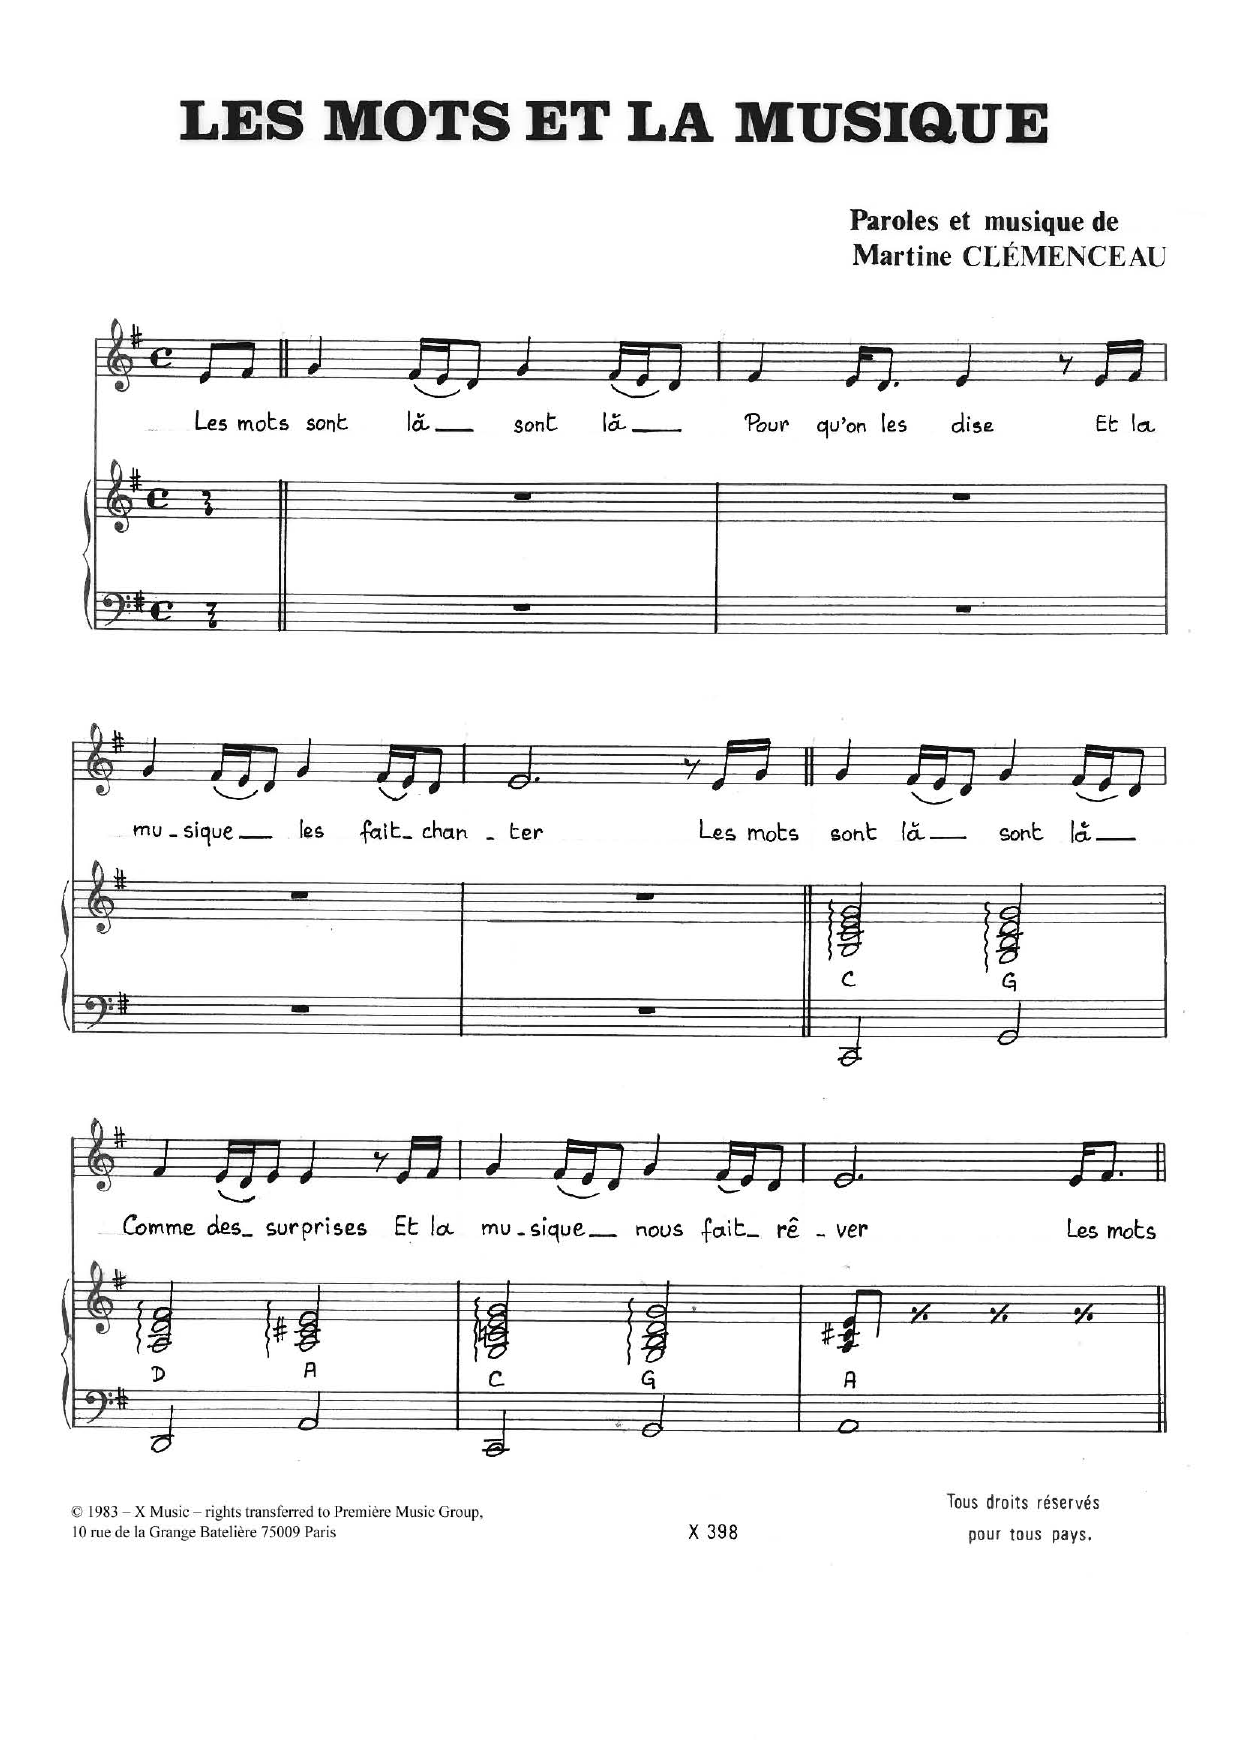 Martine Clemenceau Les Mots Et La Musique Sheet Music Notes & Chords for Piano & Vocal - Download or Print PDF